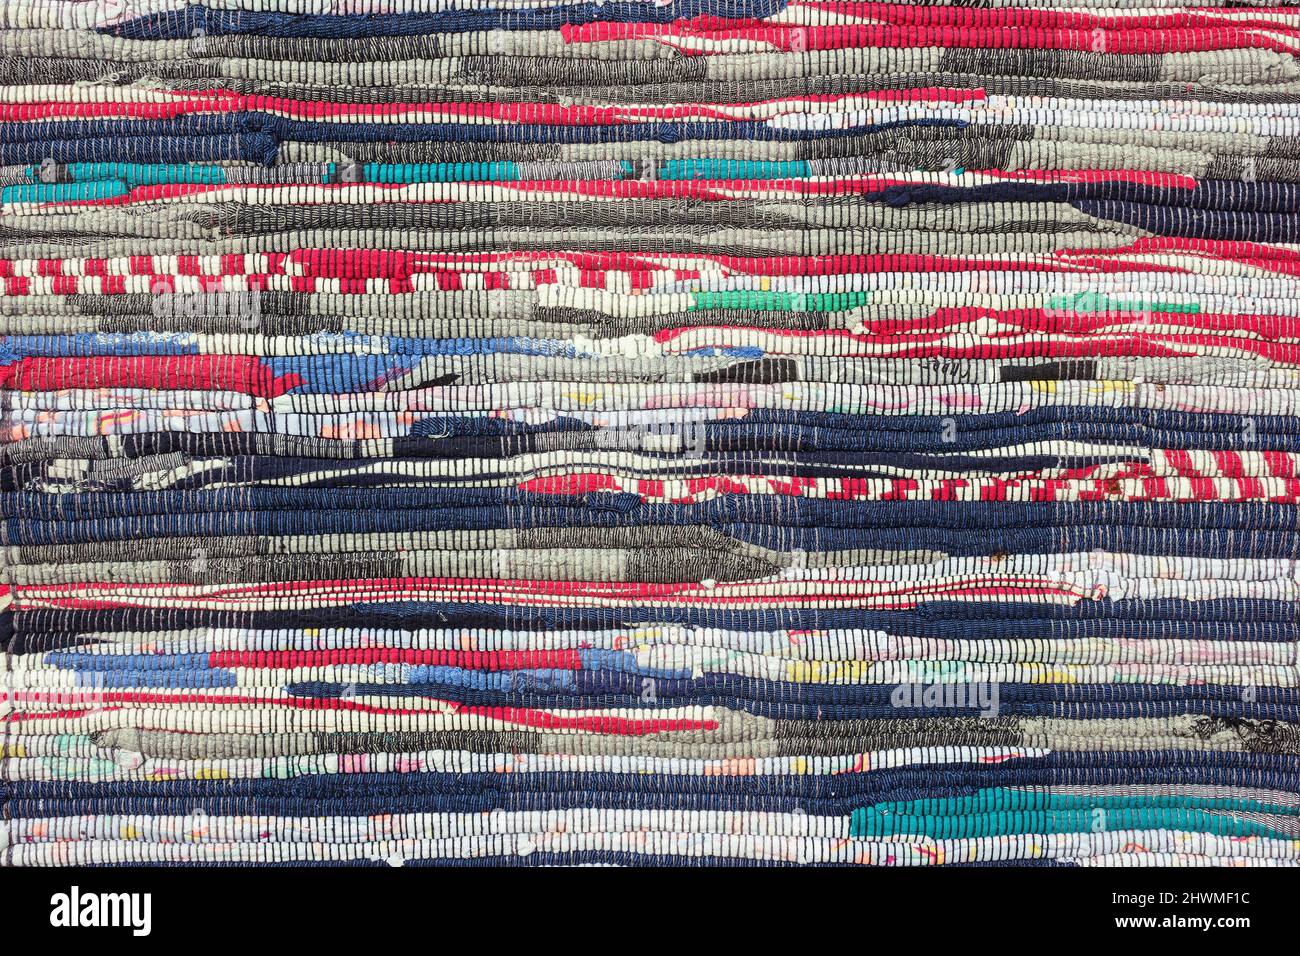 https://c8.alamy.com/comp/2HWMF1C/multi-striped-colored-textile-homespun-rug-closeup-background-2HWMF1C.jpg